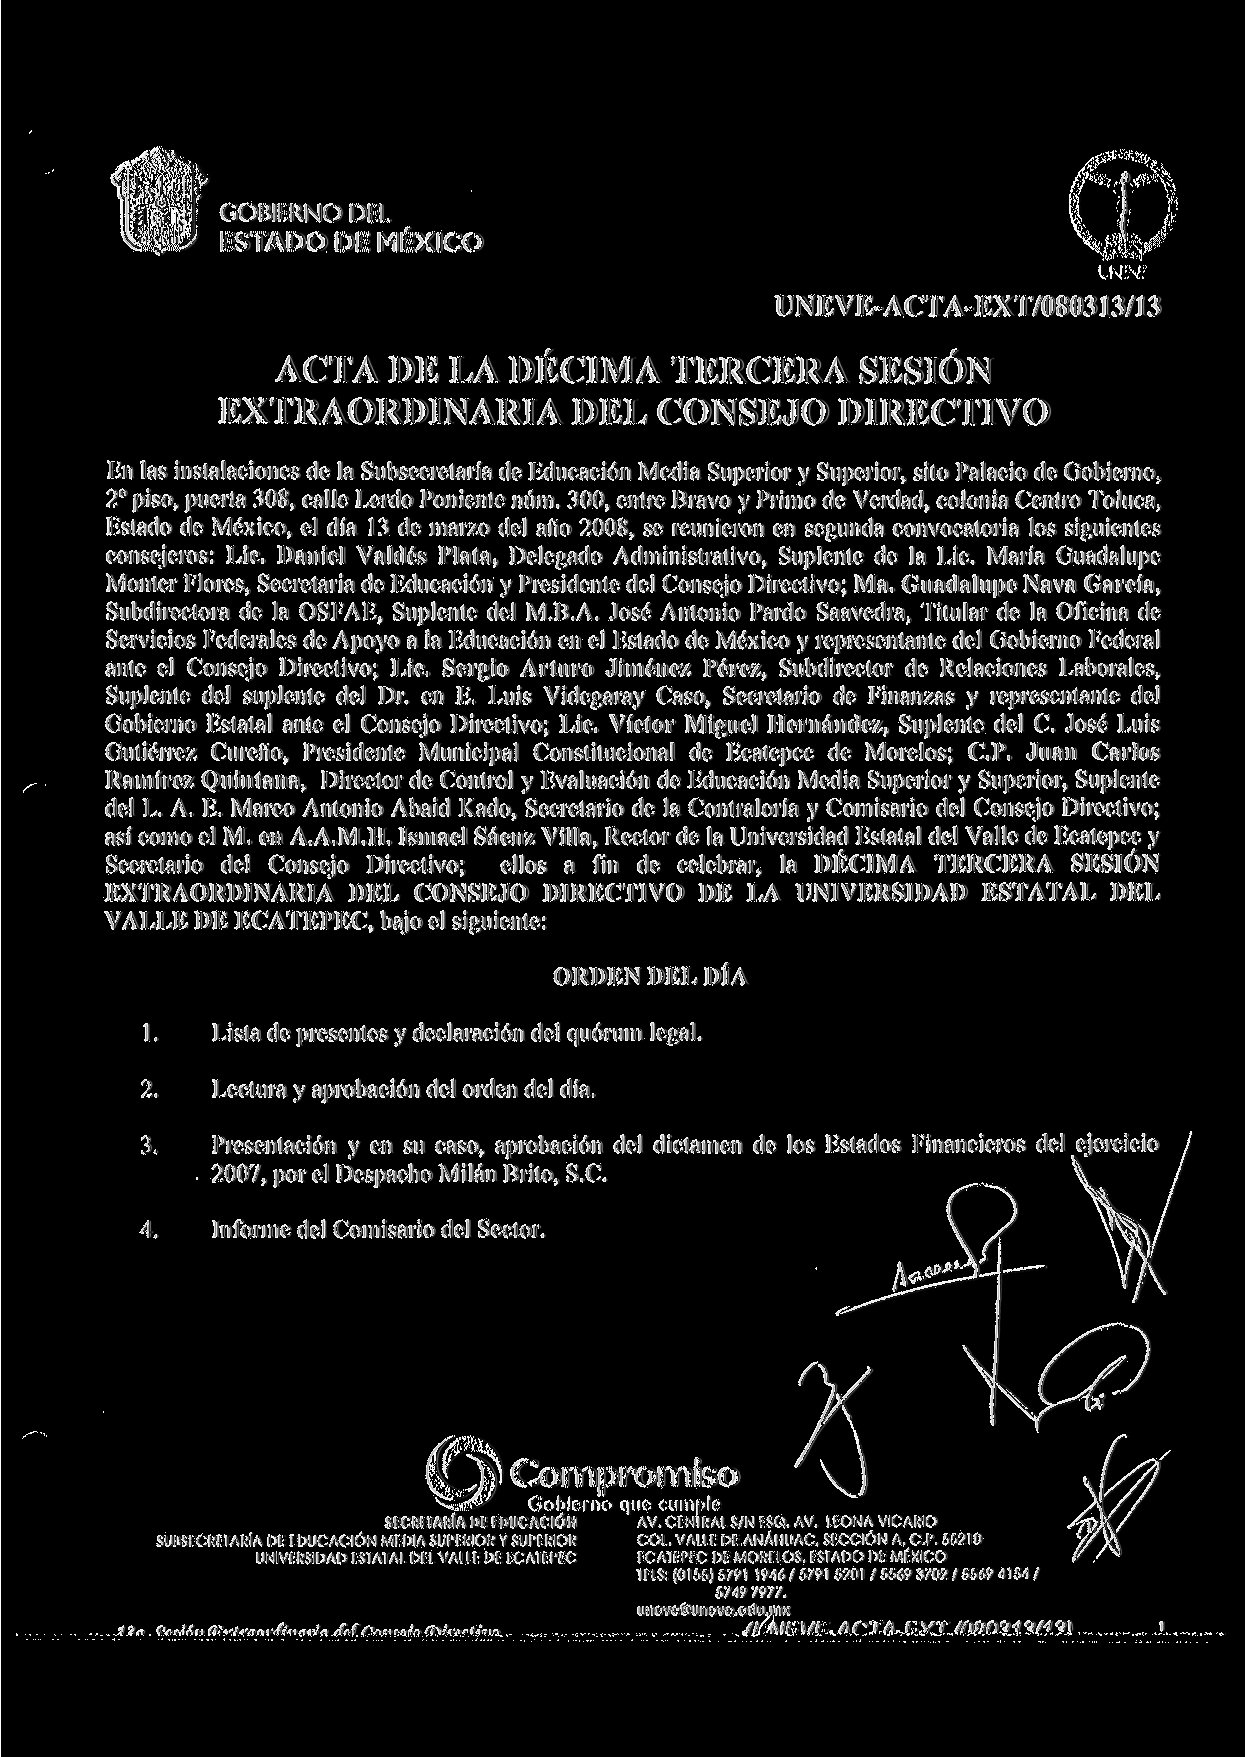 UNEVE-ACTA-EXT/080313/13 ACTA DE LA DÉCIMA TERCERA SESIÓN EXTRAORDINARIA DEL CONSEJO DIRECTIVO En las instalaciones de la Subsecretaría de Educación Media Superior y Superior, sito Palacio de